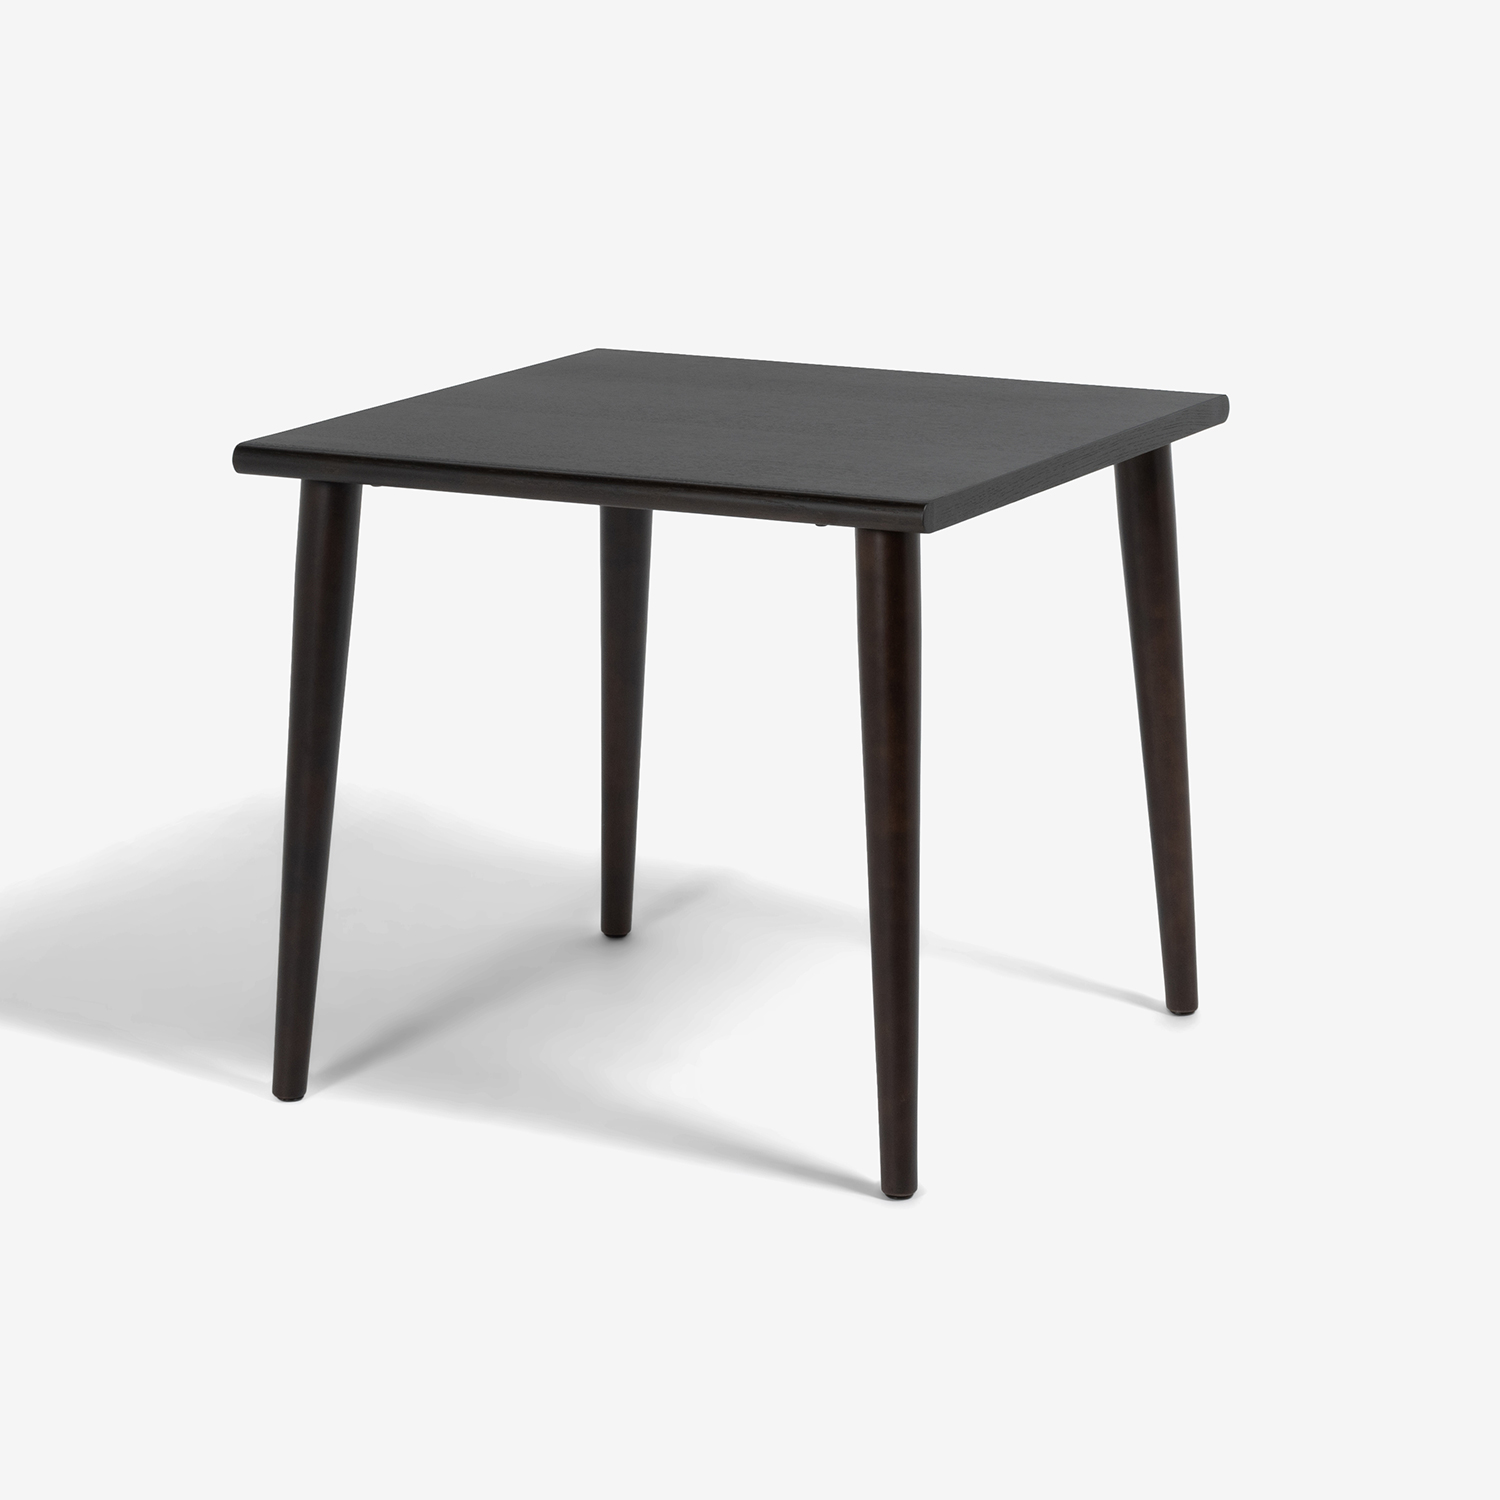 ダイニングテーブル「ユノ3」幅80cm レッドオーク材 ダークブラウン色 丸脚 | 大塚家具 オンラインショップ